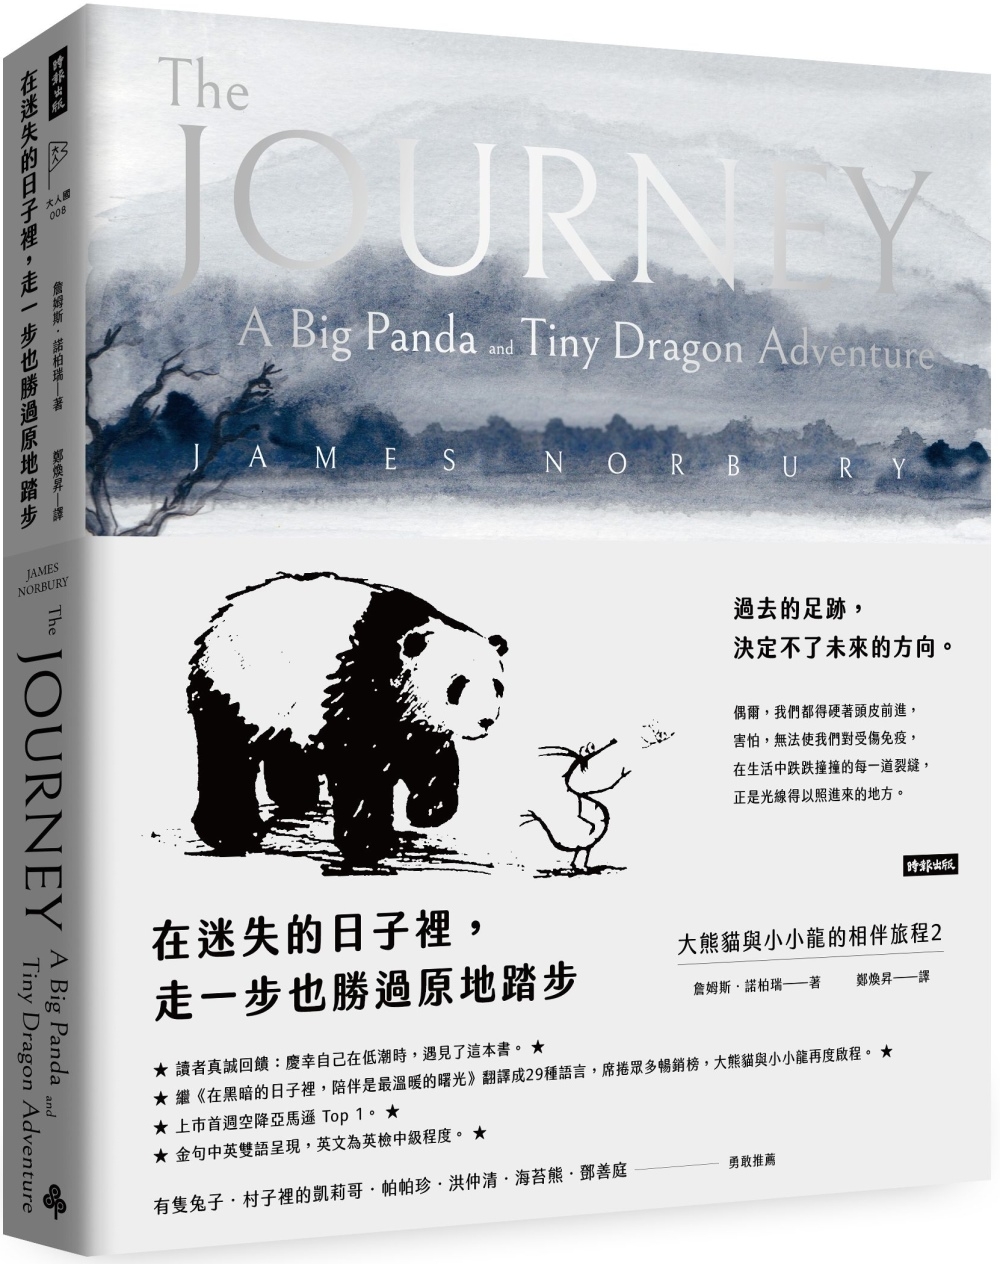 在迷失的日子裡，走一步也勝過原地踏步： 大熊貓與小小龍的相伴...